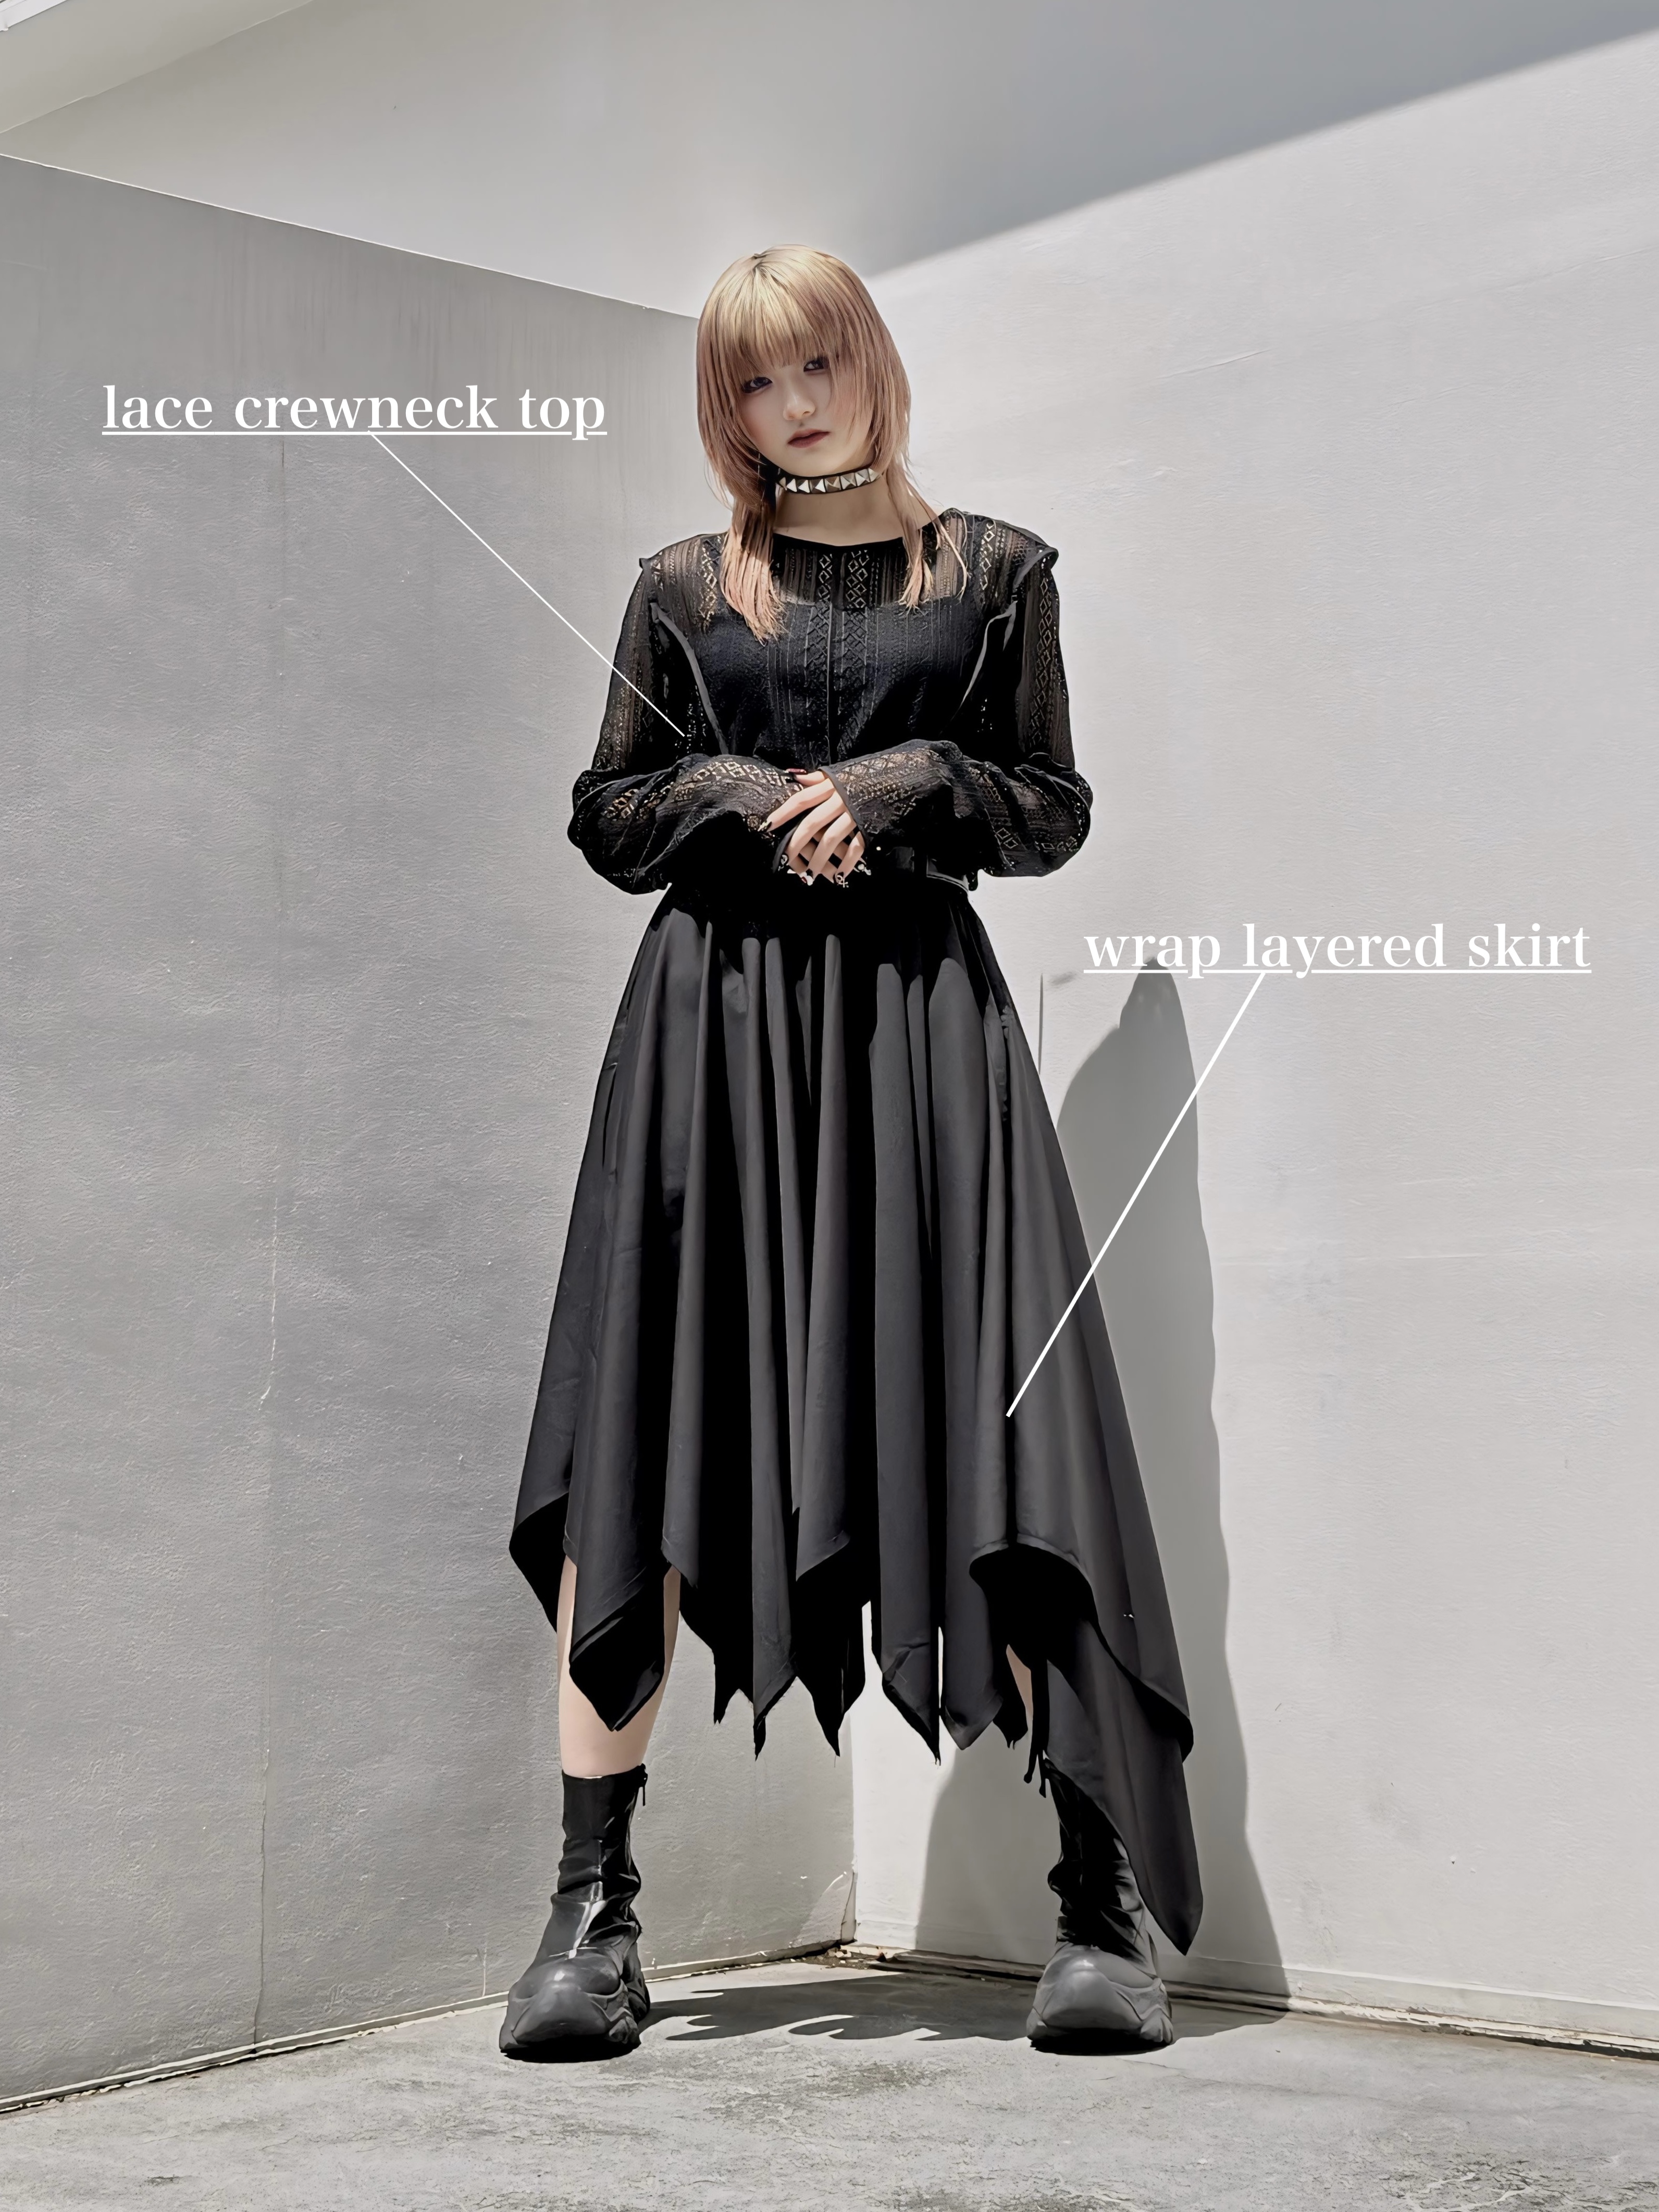 lace crewneck top × wrap layered skirt